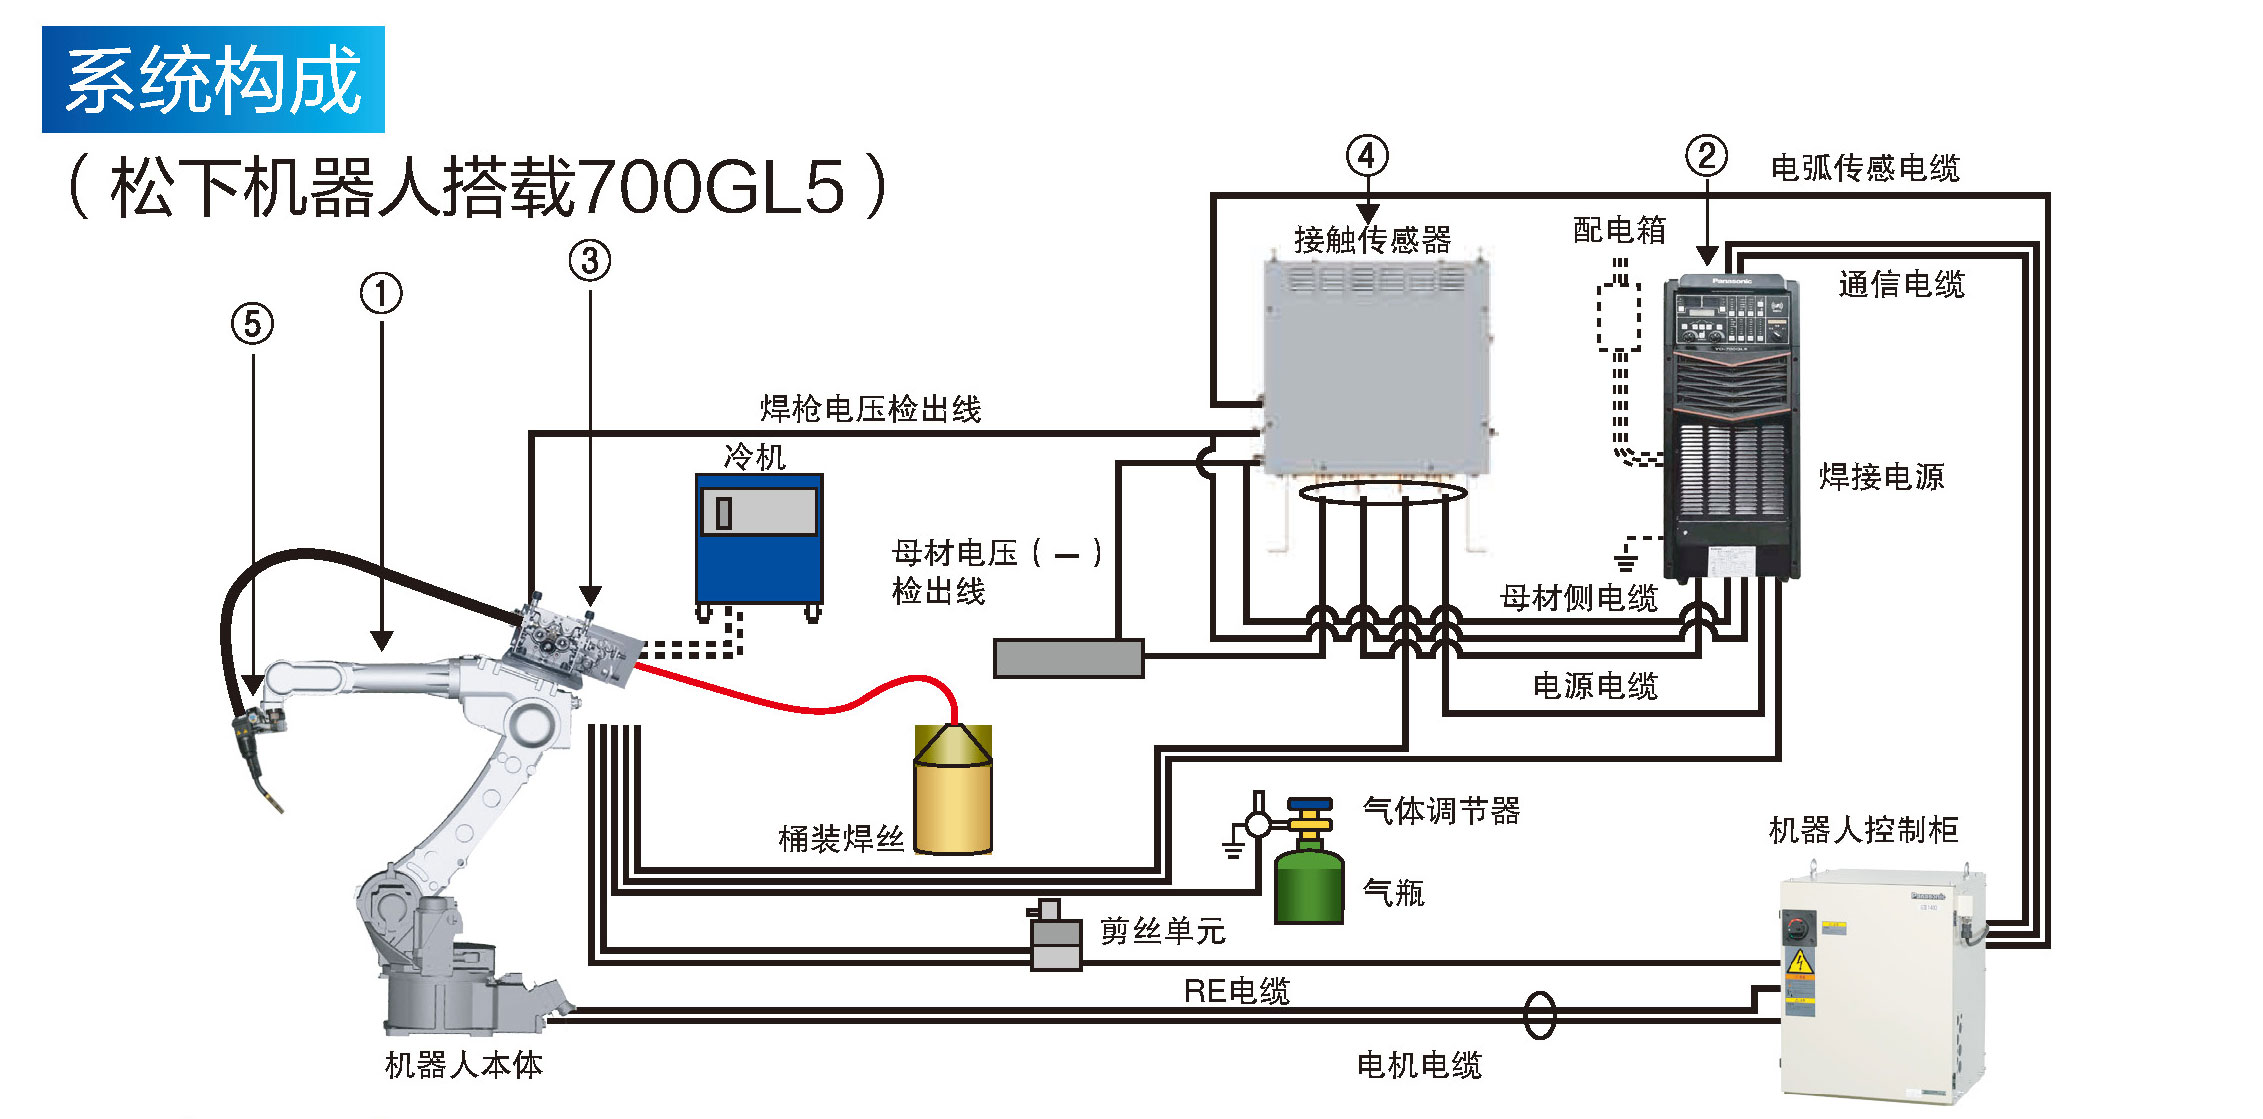 熔化極氣保焊機(700GL5)(圖4)